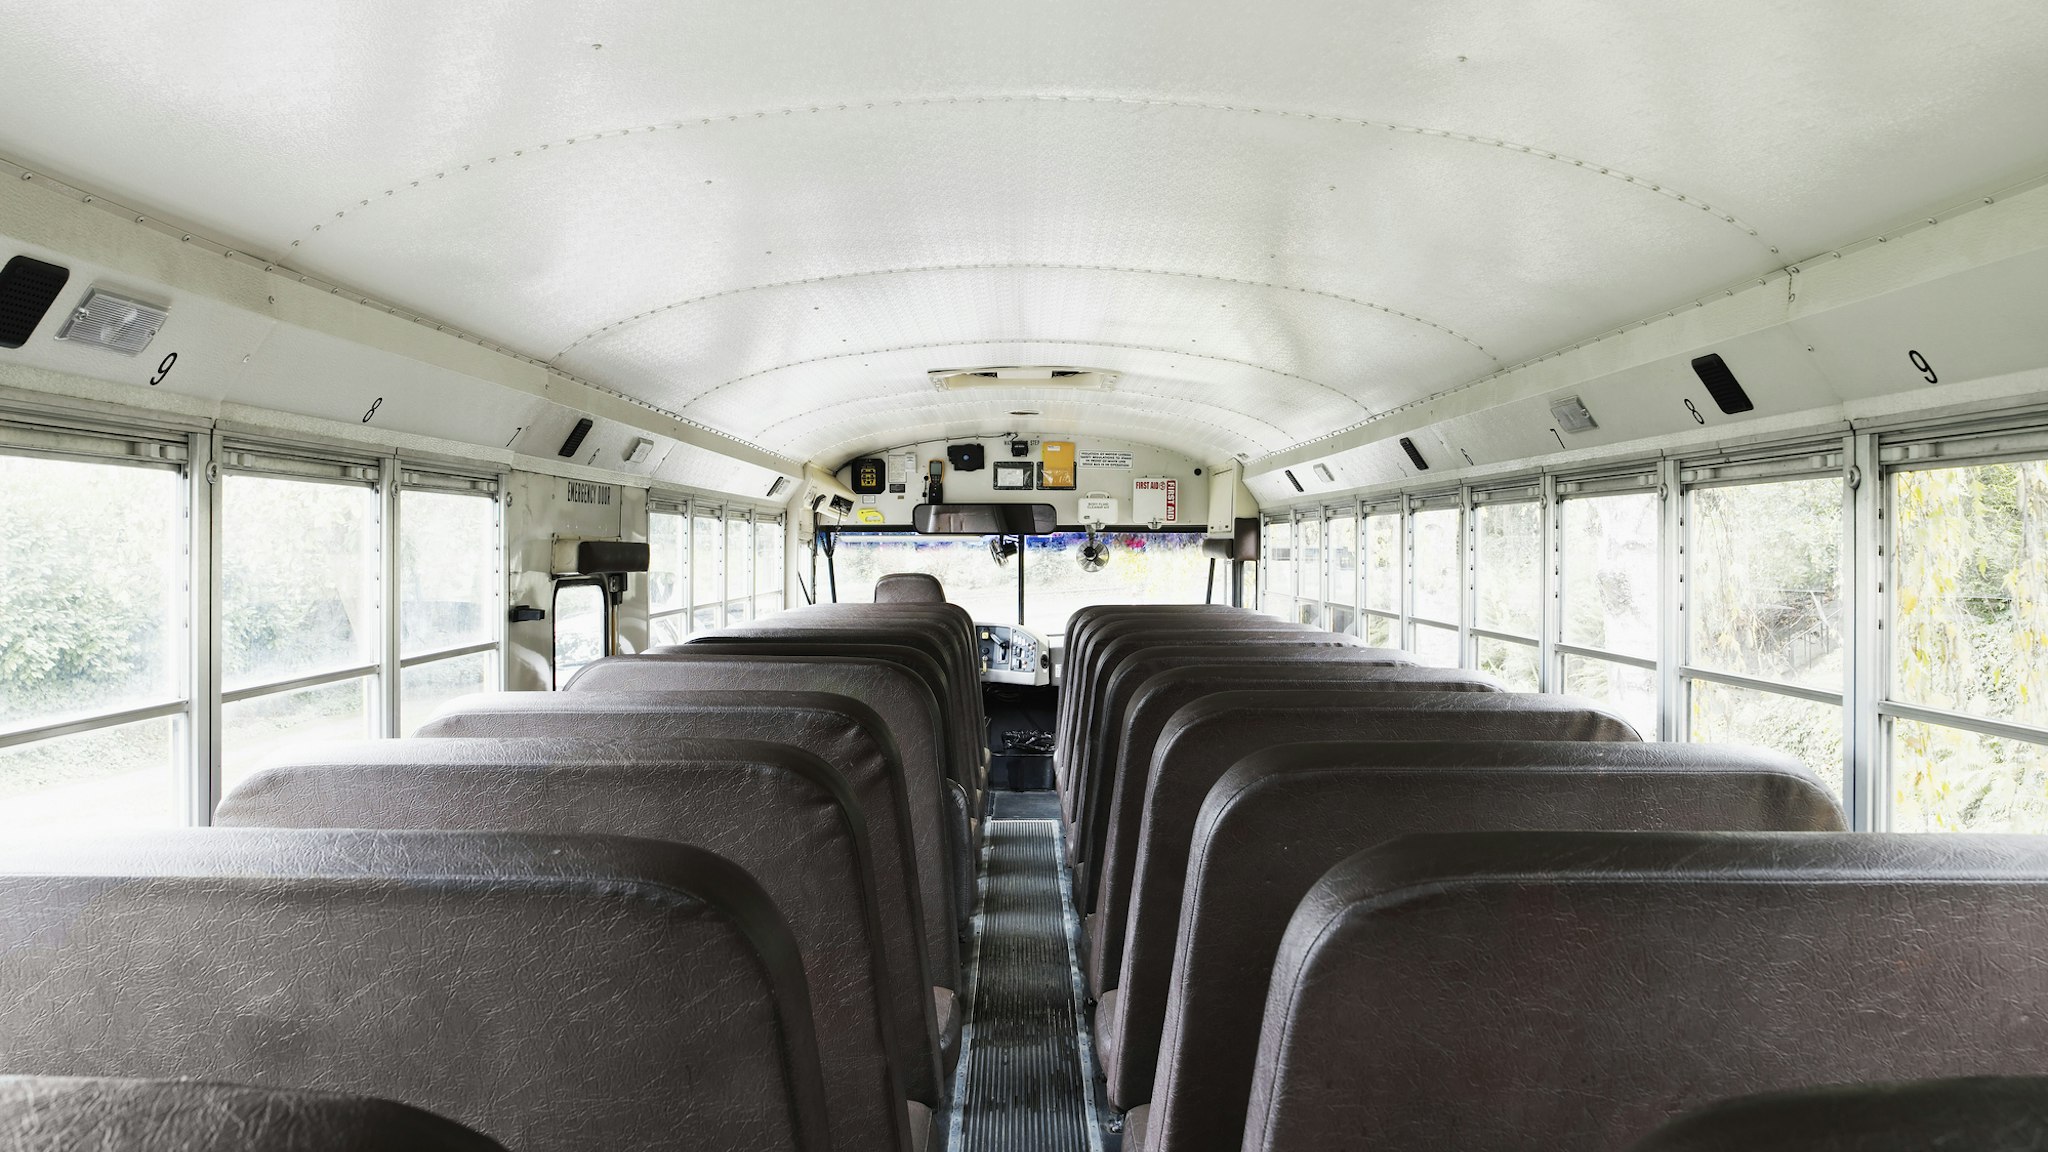 Interior view of empty school bus - stock photo